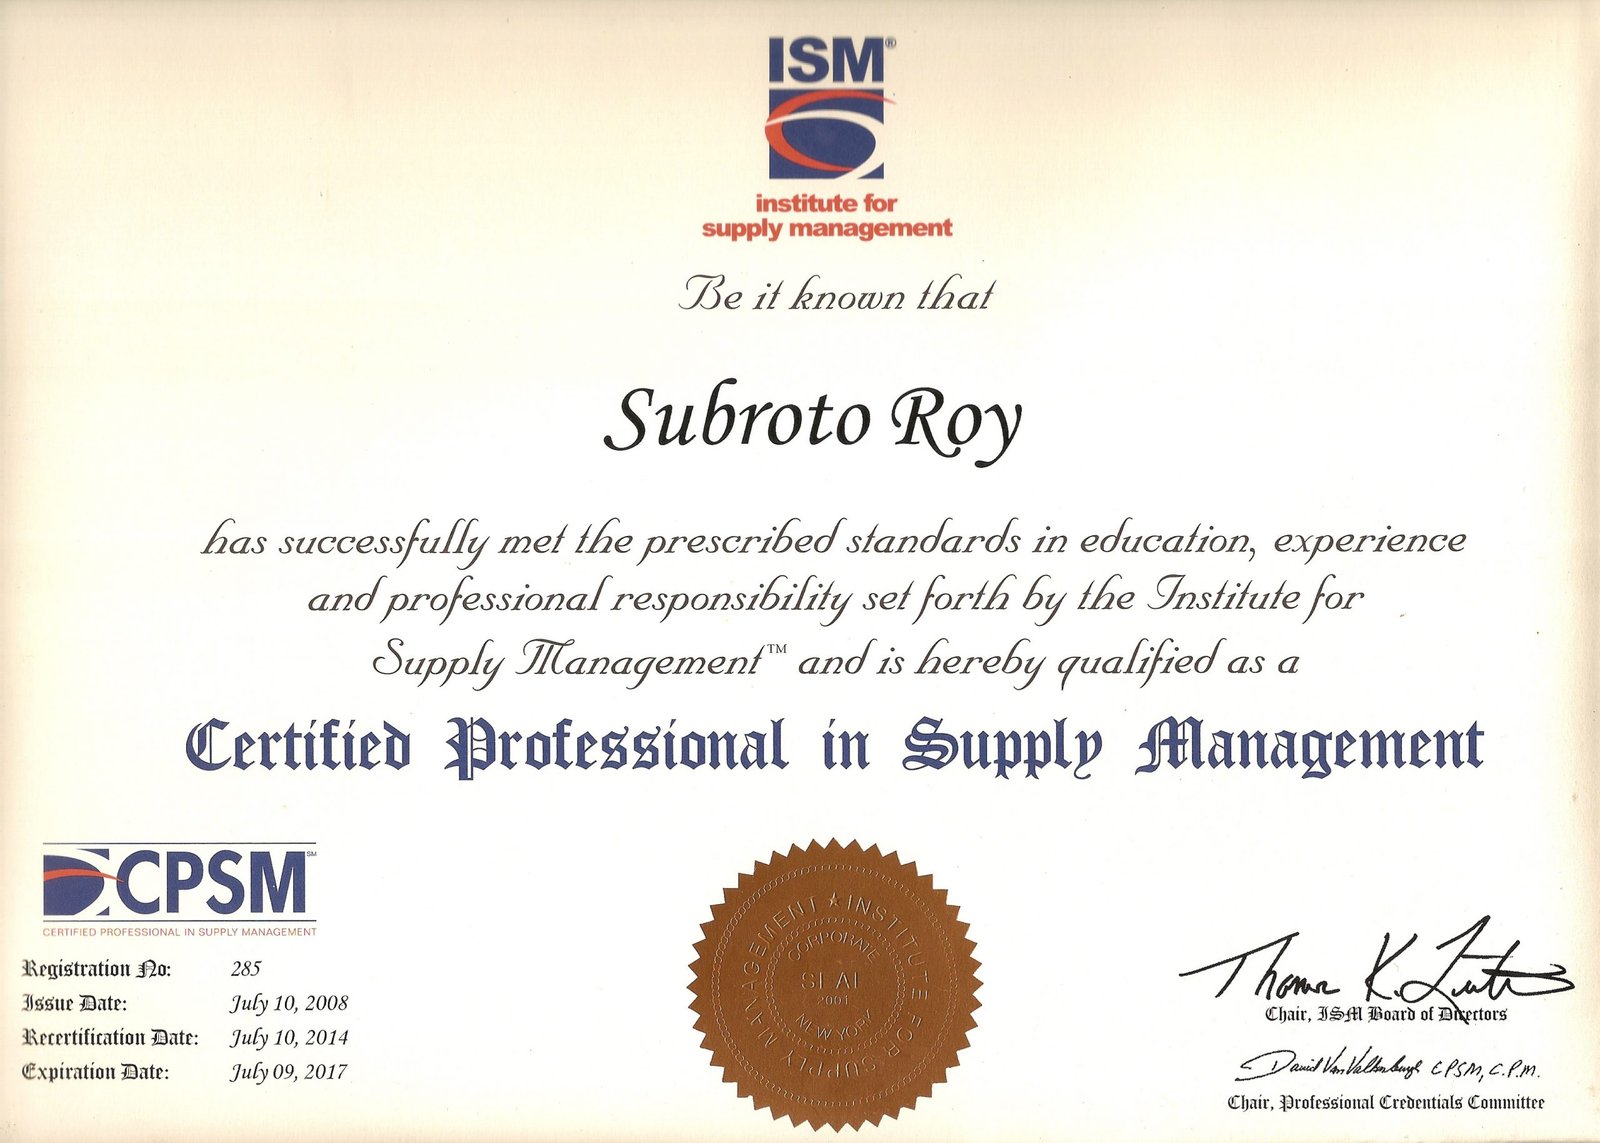 CPSM là chứng chỉ chuyên nghiệp trong quản lý nguồn cung ứng